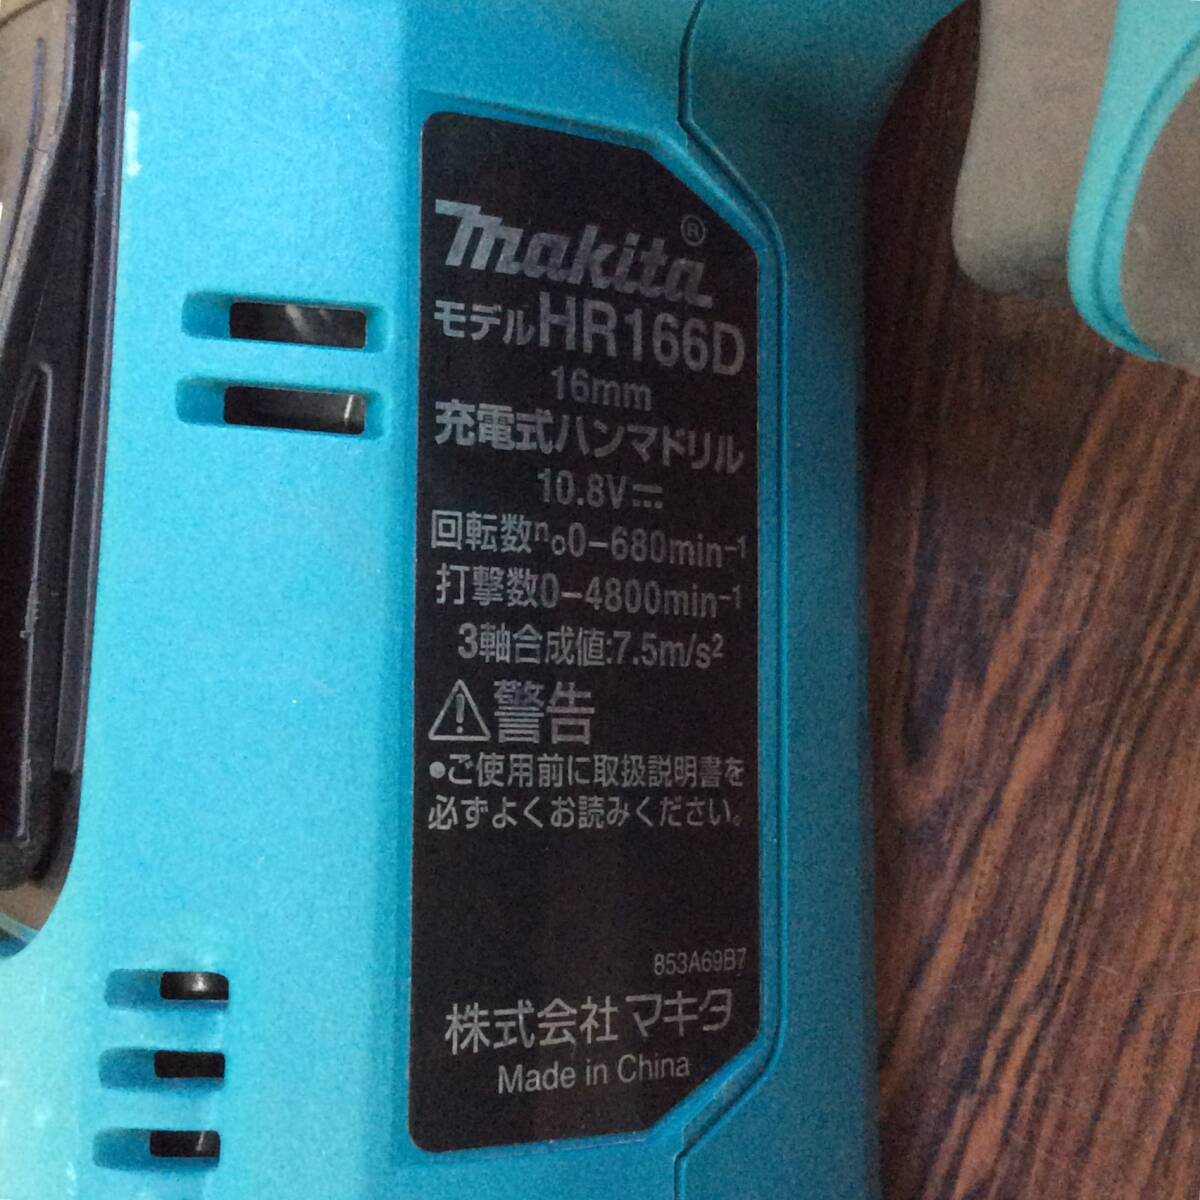 【RH-8814】中古品 makita マキタ 10.8v 16mm 充電式ハンマドリル HR166DSMX 充電器 バッテリー2個セットの画像5